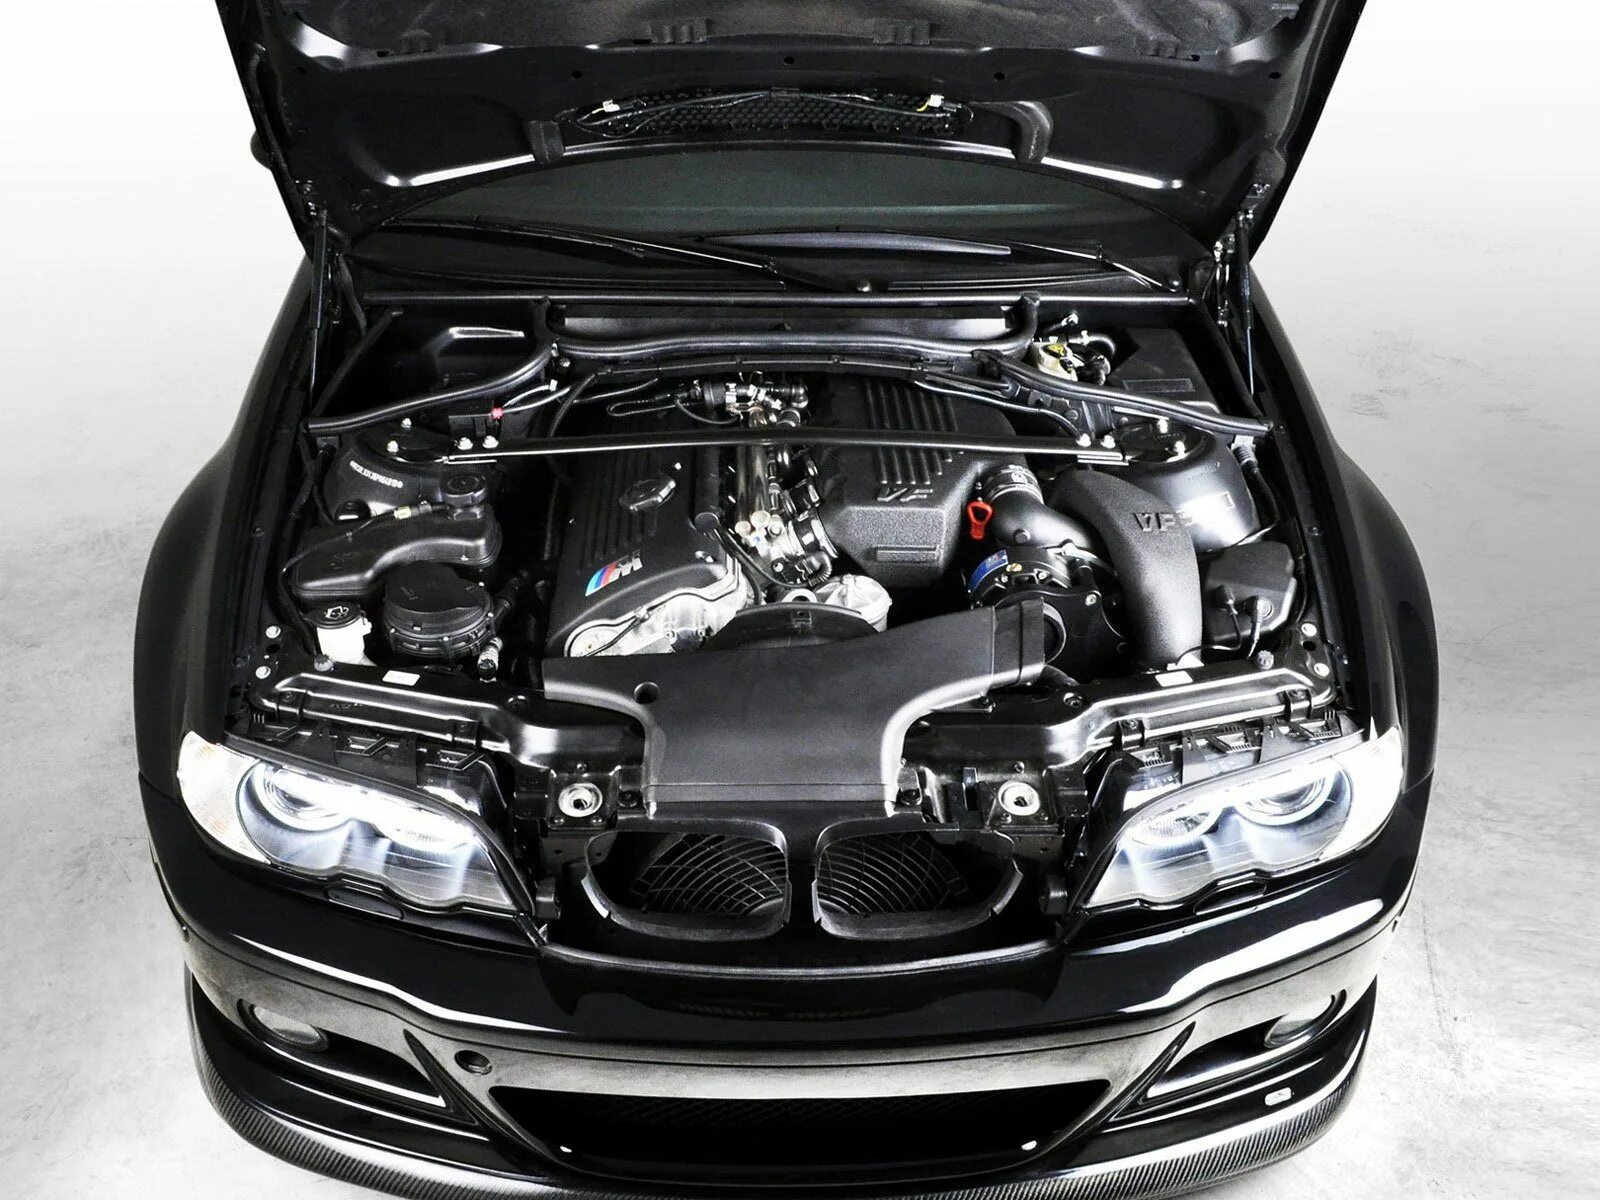 Открыть капот автомобиля. BMW m3 e46 мотор. BMW 3 e46 engine. BMW m3 e46 под капотом. BMW e46 m3 подкапотка.